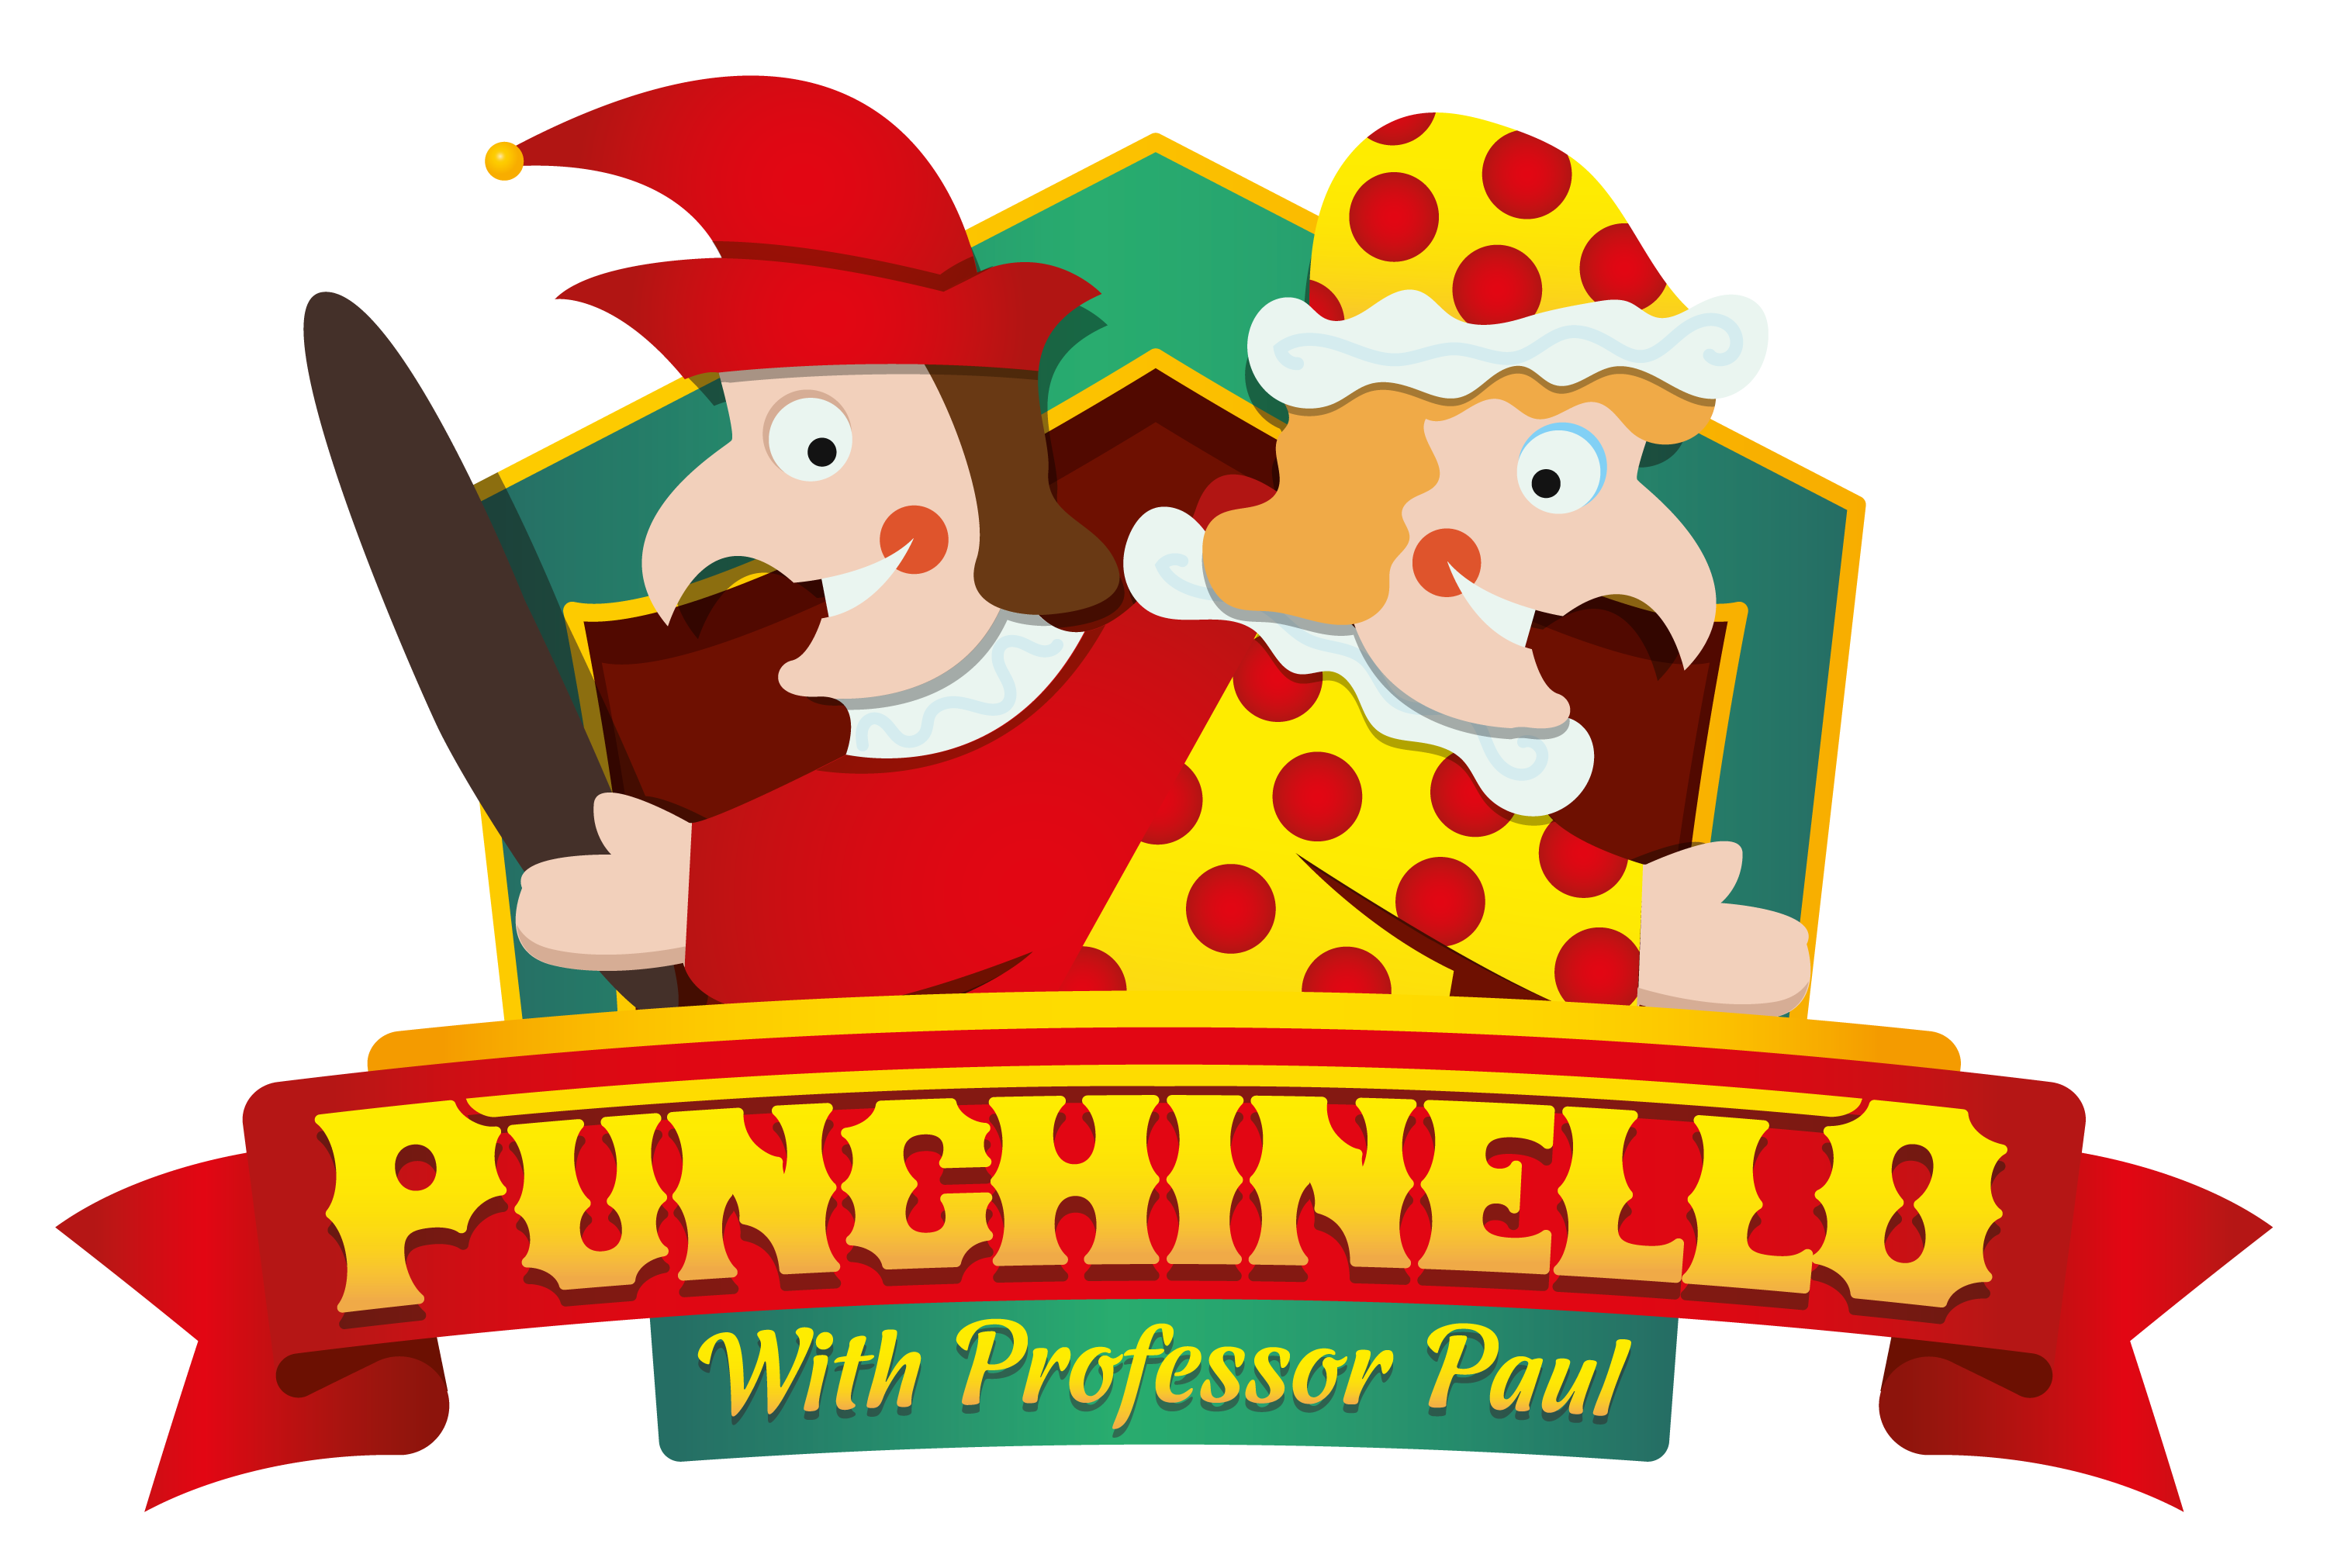 Punchinello